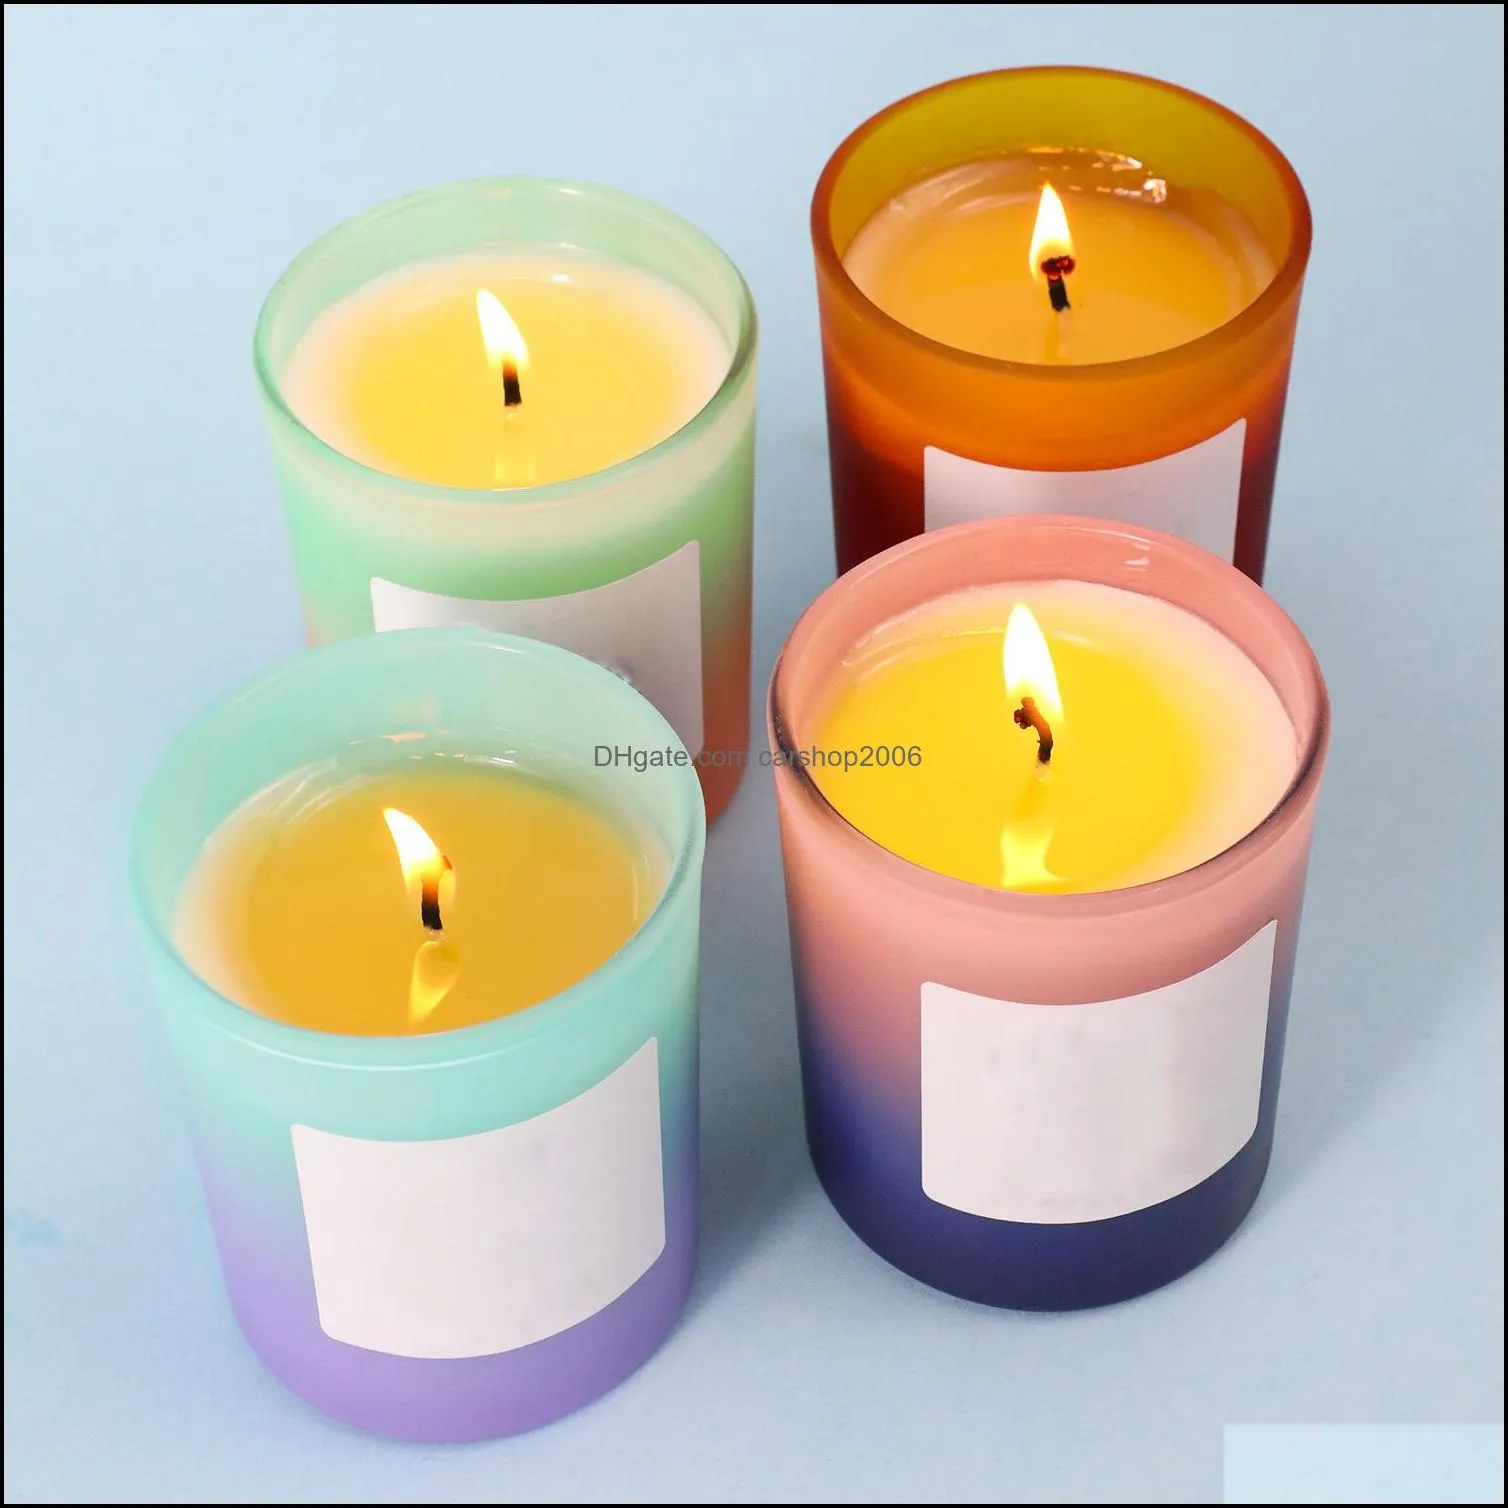 Fragr￢ncias de velas perfumadas Decora￧￣o Velas de jardim de vidro Planta natural ￓleo essencial Soja Cera D Dhocn